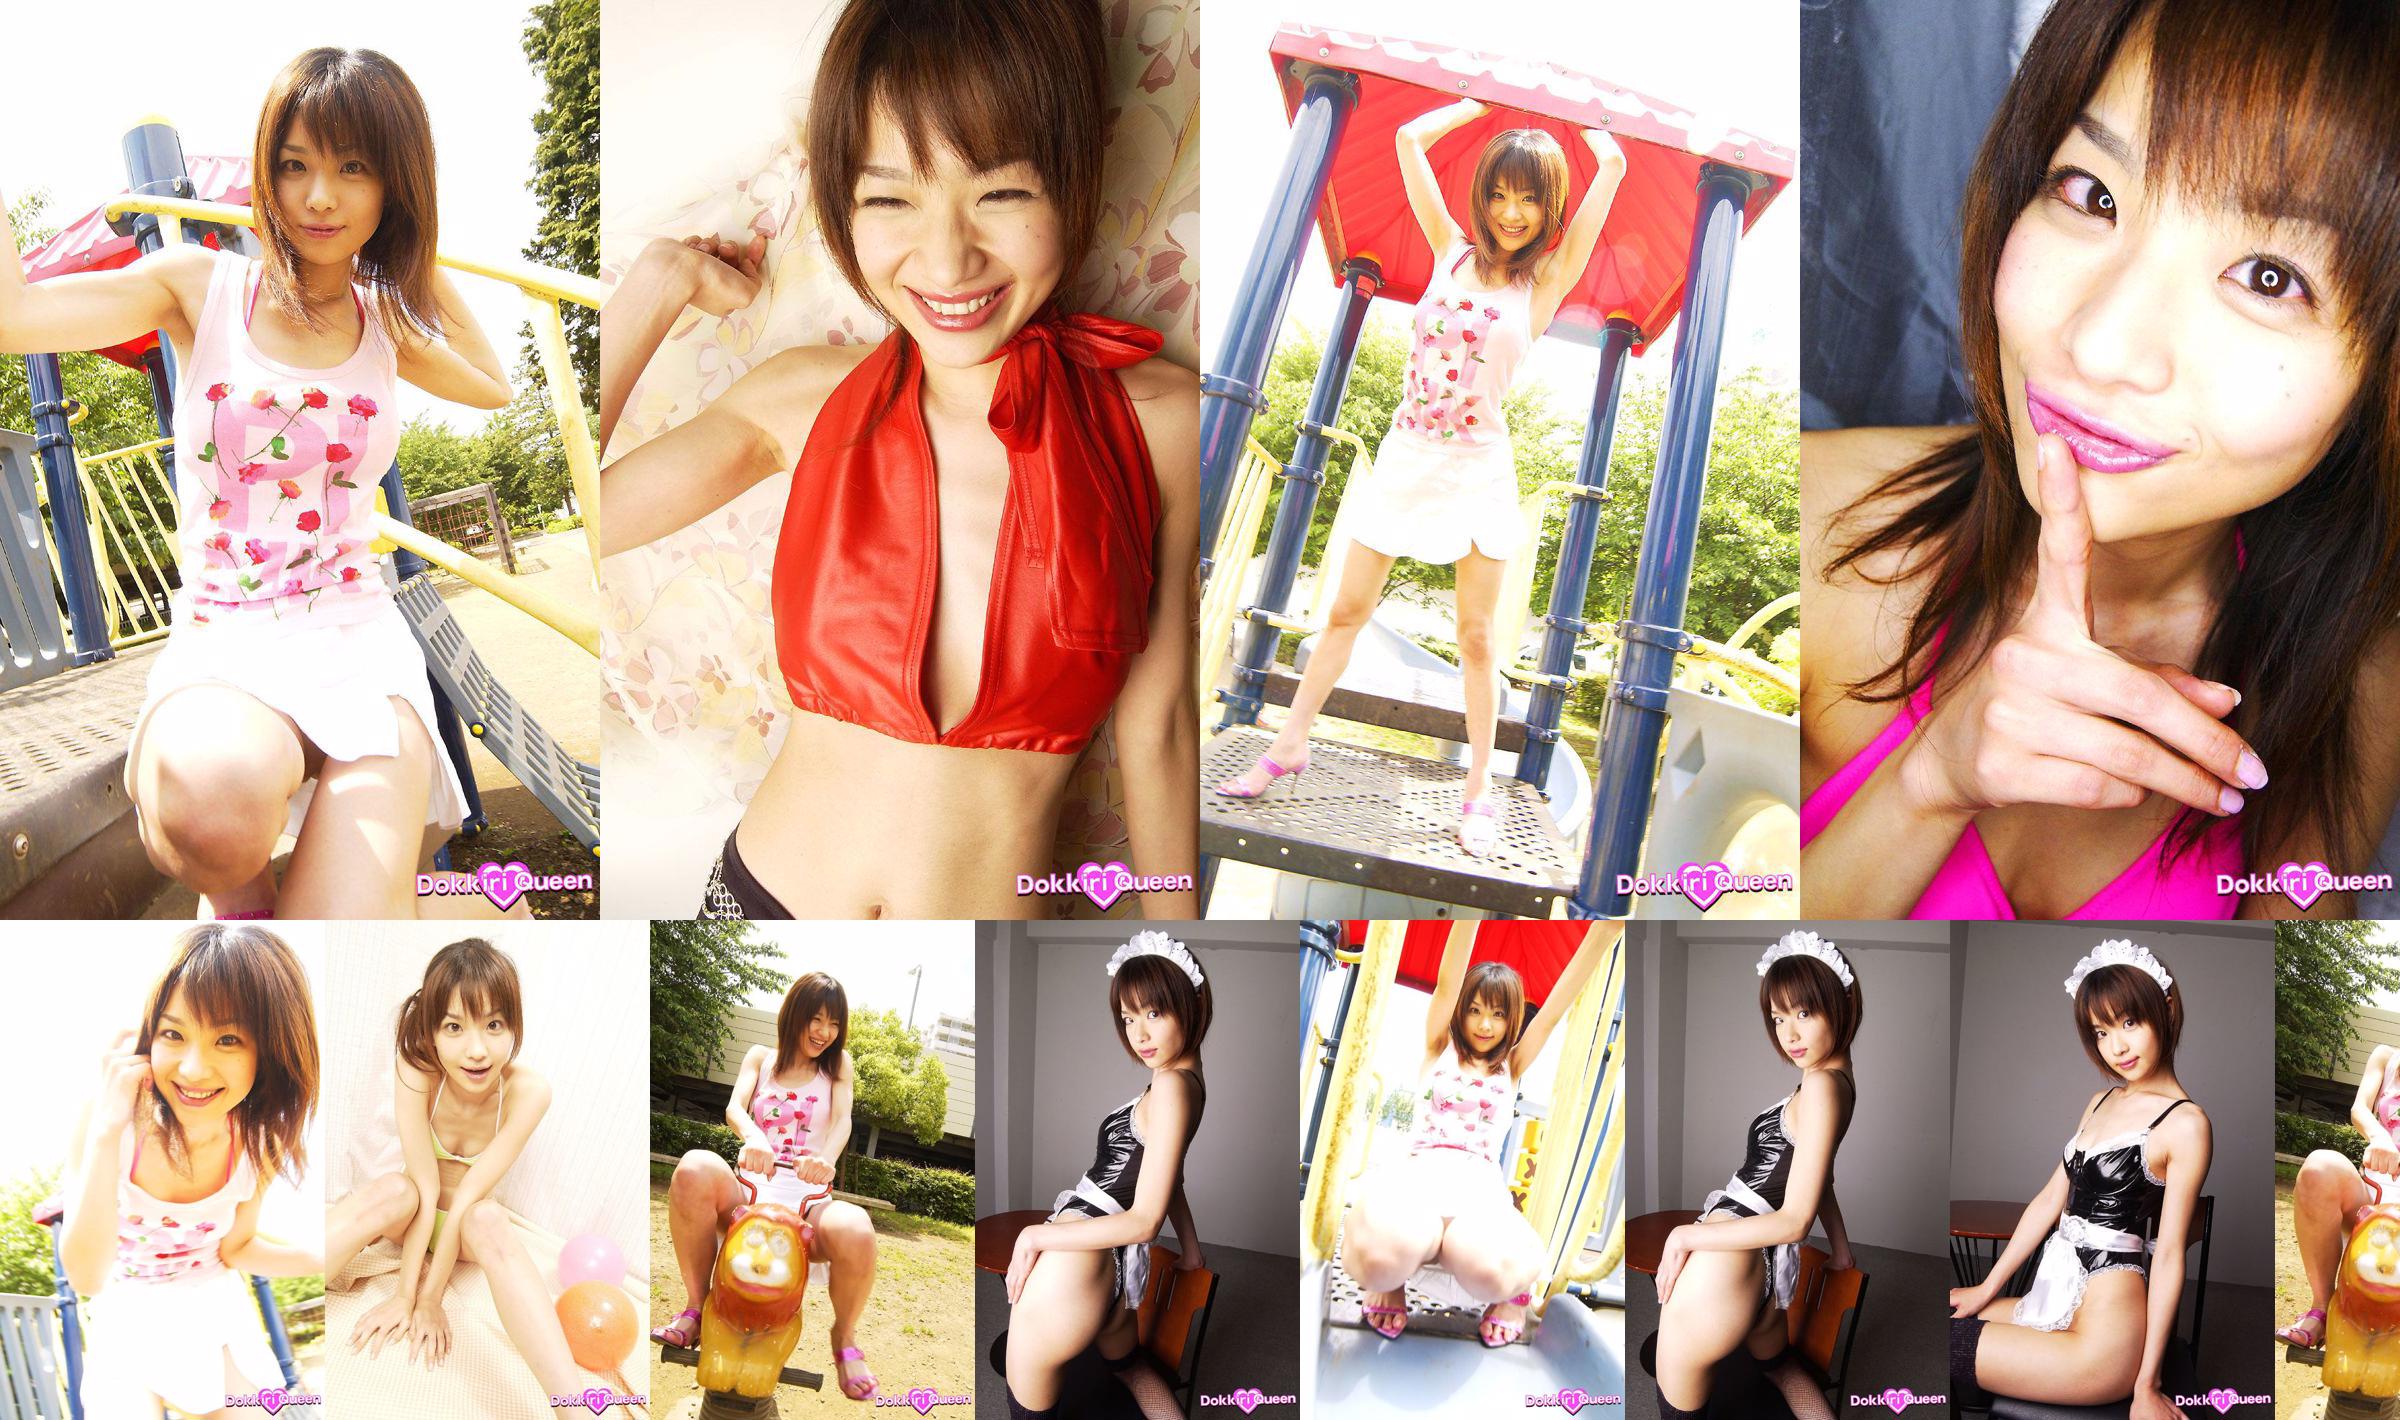 [X-City] Dokkiri Queen nr 013 Aimi Aimi Profile No.f376bb Strona 2